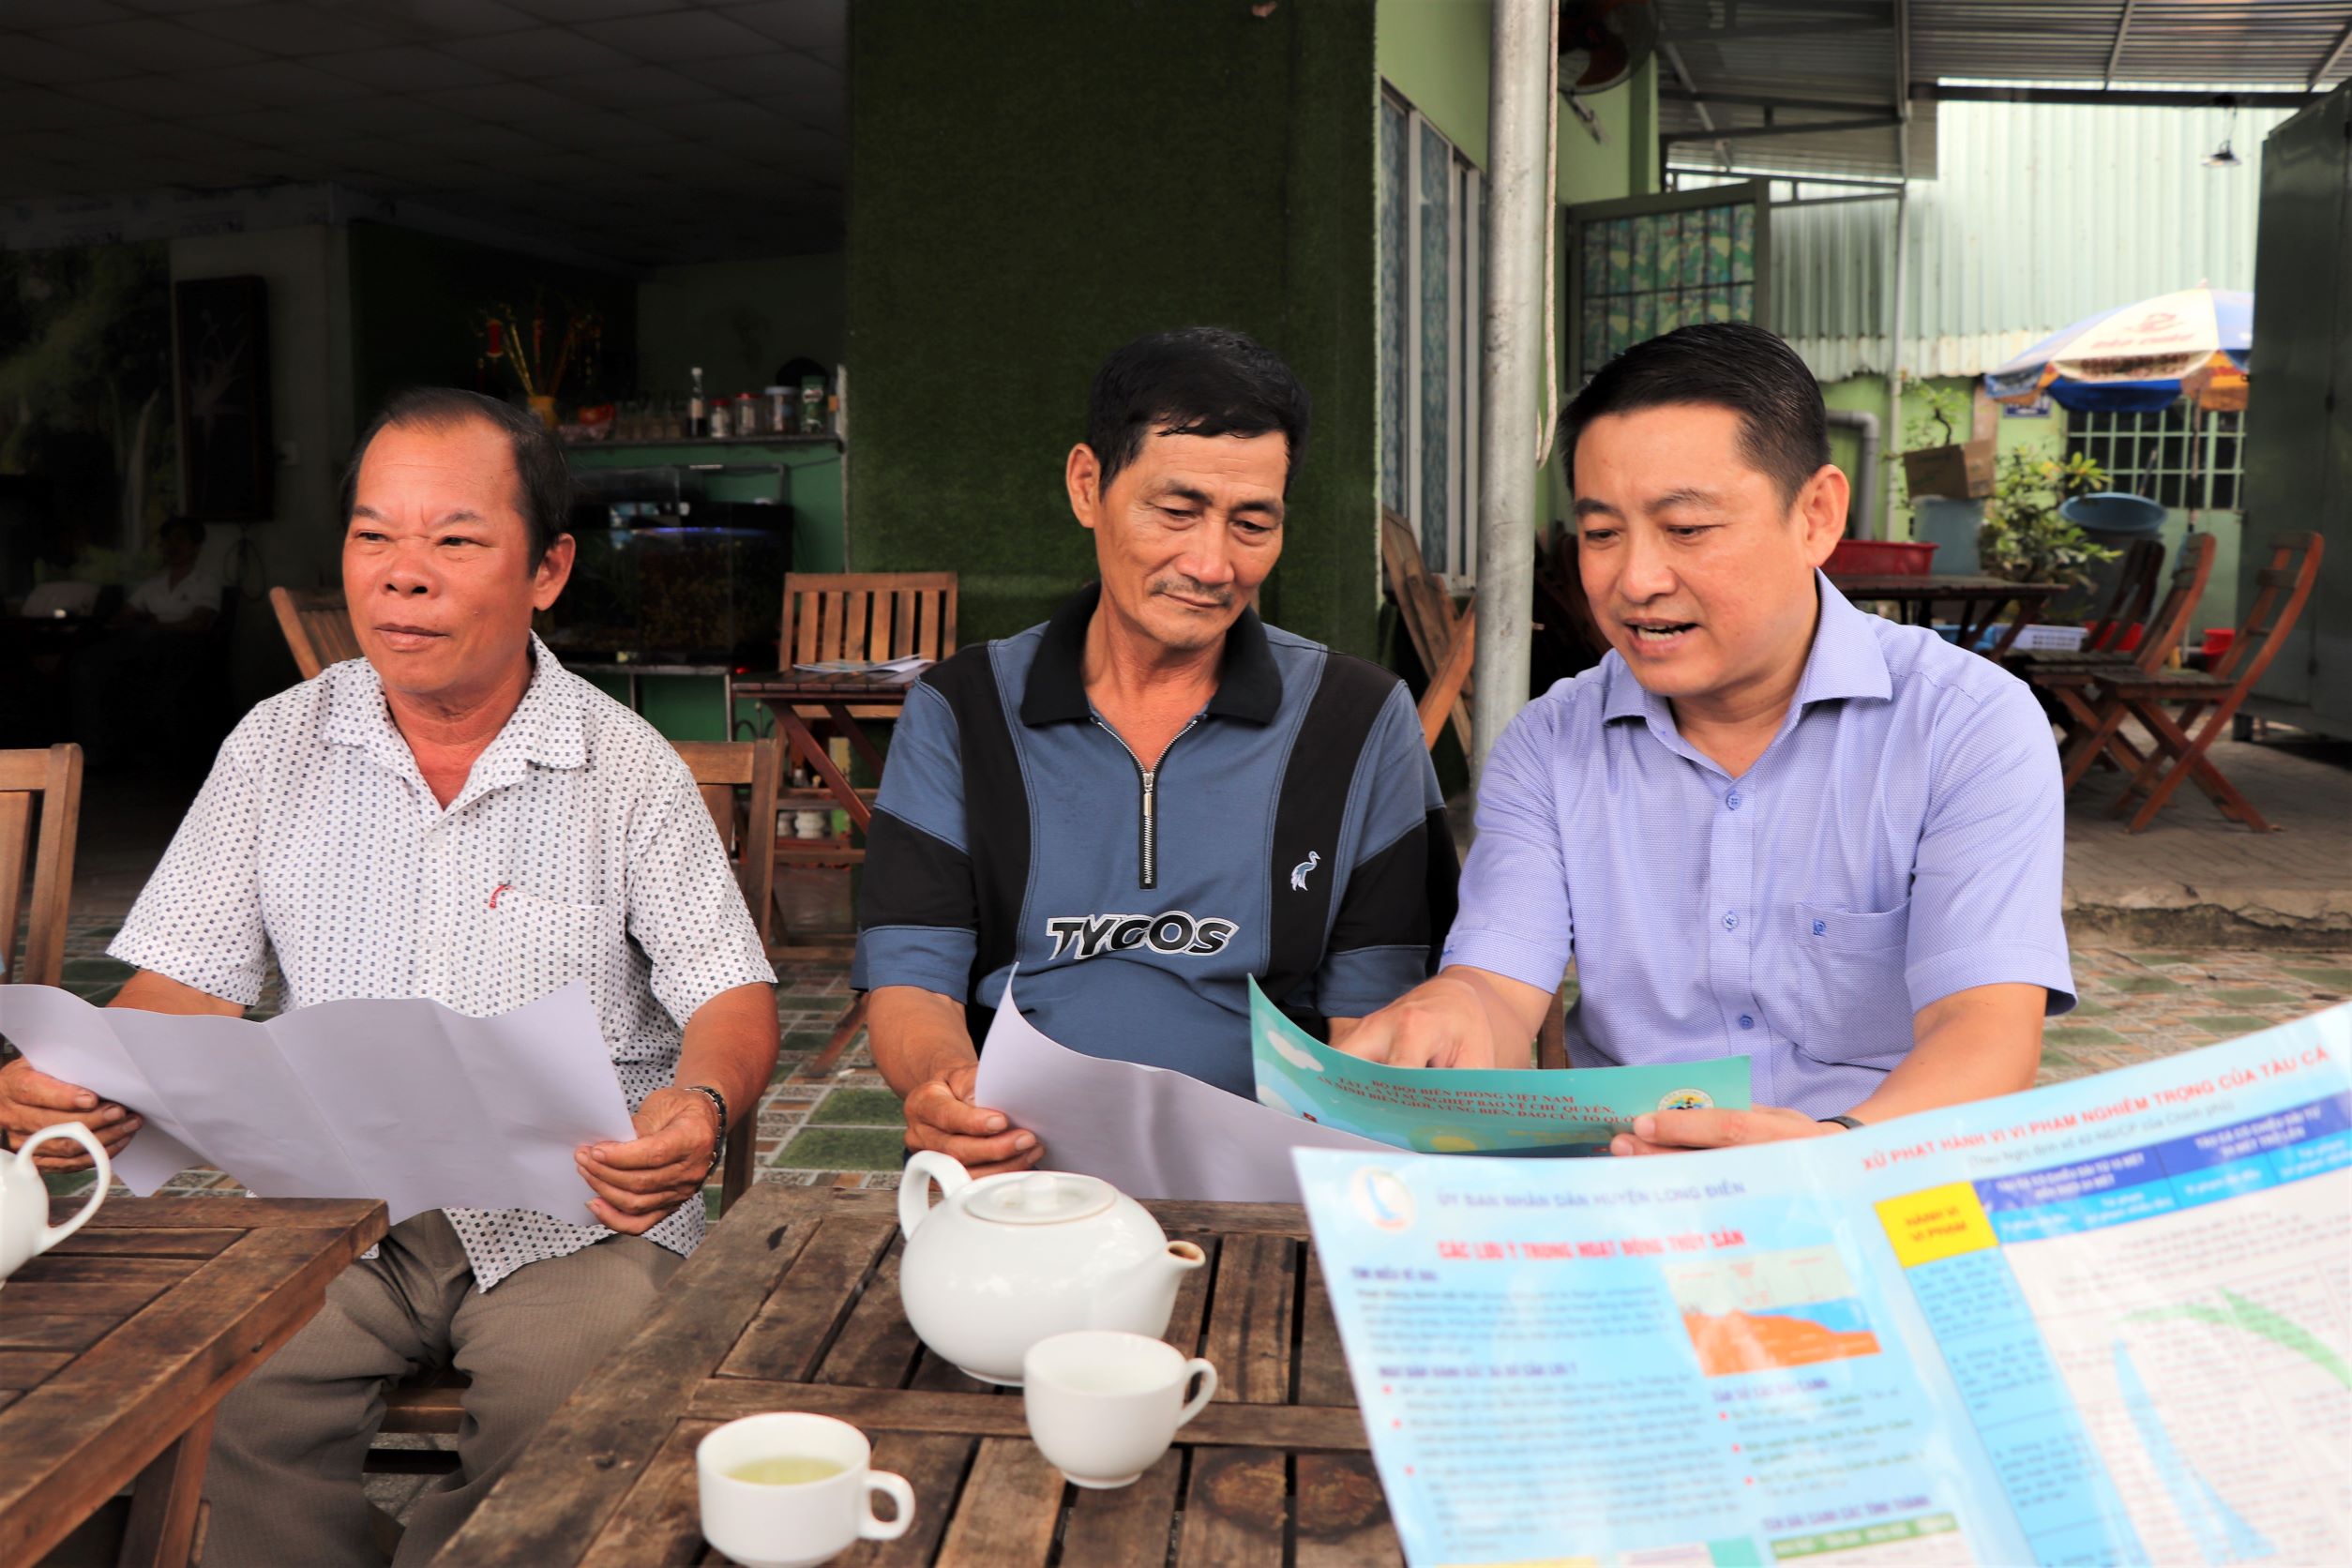 Ông Huỳnh Sơn Tuấn (bên phải), Bí thư Huyện ủy Long Điền trao đổi với ngư dân về việc chống khai thác hải sản bất hợp pháp, không theo quy định (IUU).